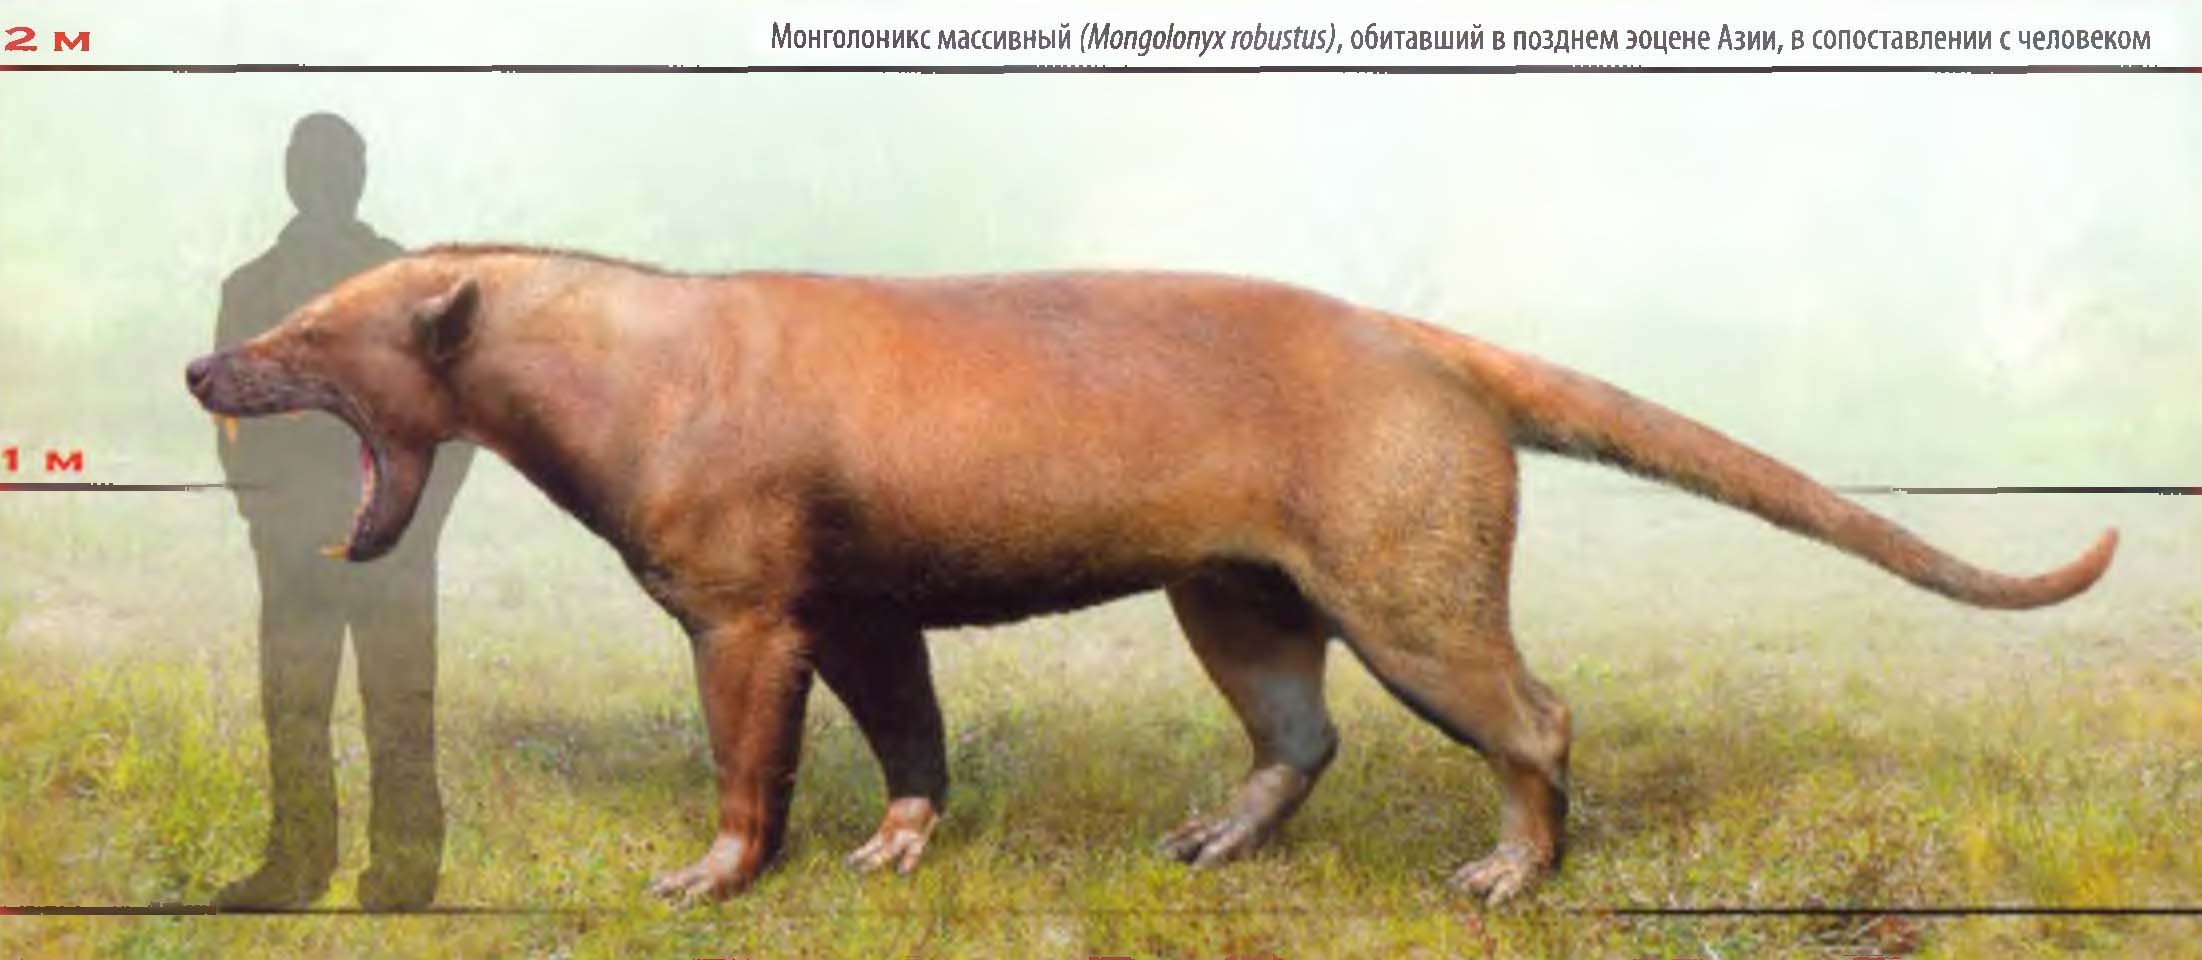 Монголоникс массивный (Mongolonyx robustus), обитавший в позднем эоцене Азии, в сопоставлении с человеком.